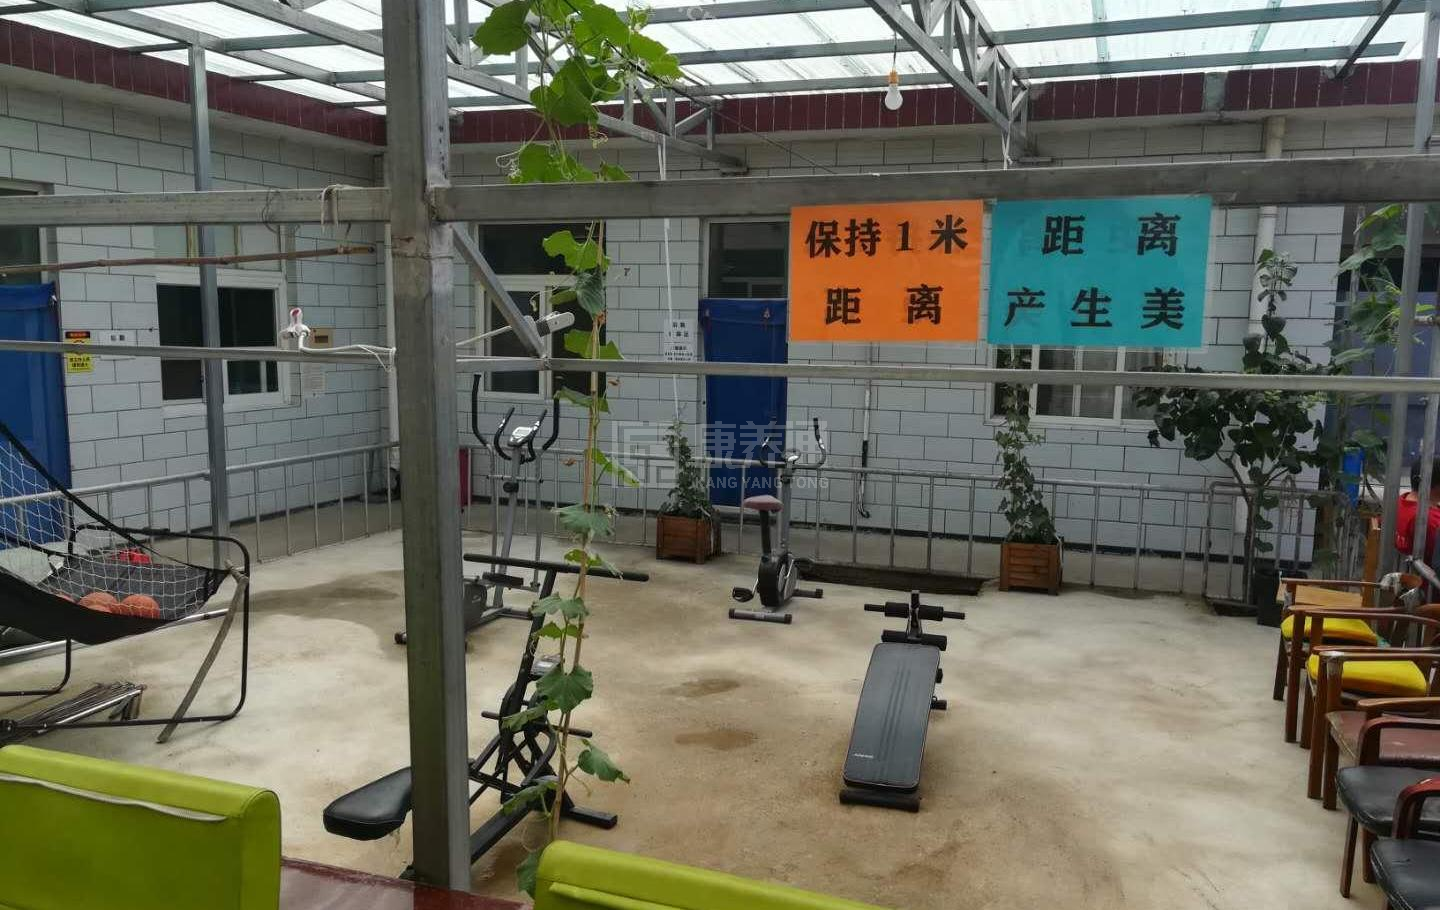 北京市平谷区康德馨养老院服务项目图3惬意的环境、感受岁月静好